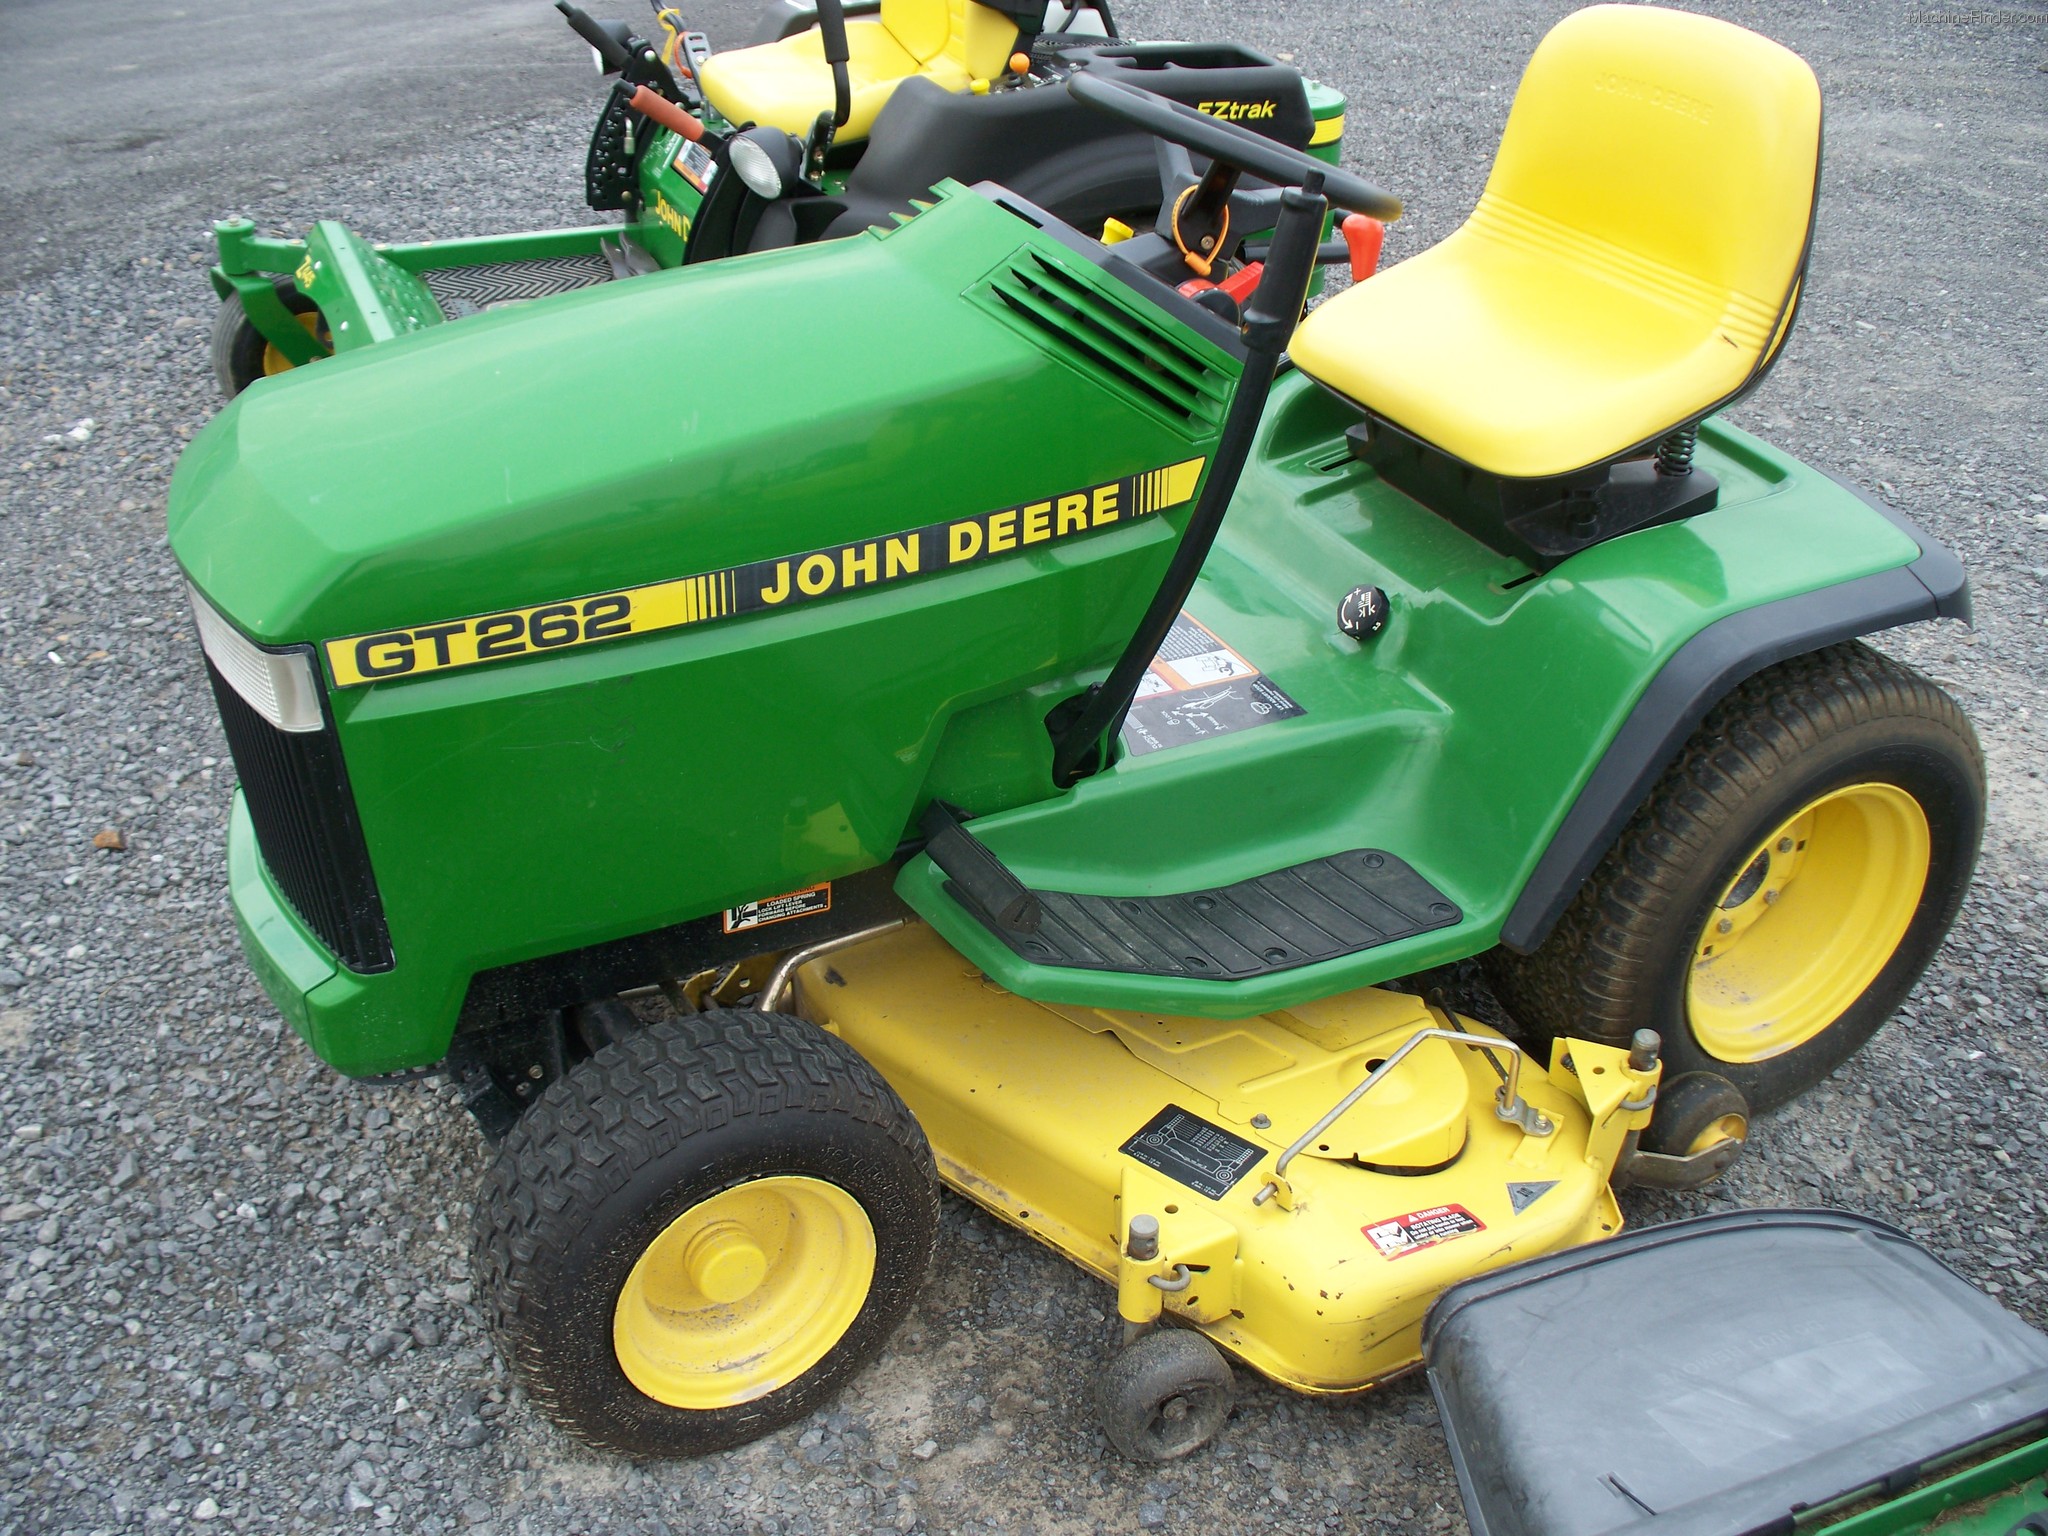 John Deere GT262 Lawn & Garden and Commercial Mowing - John Deere ...